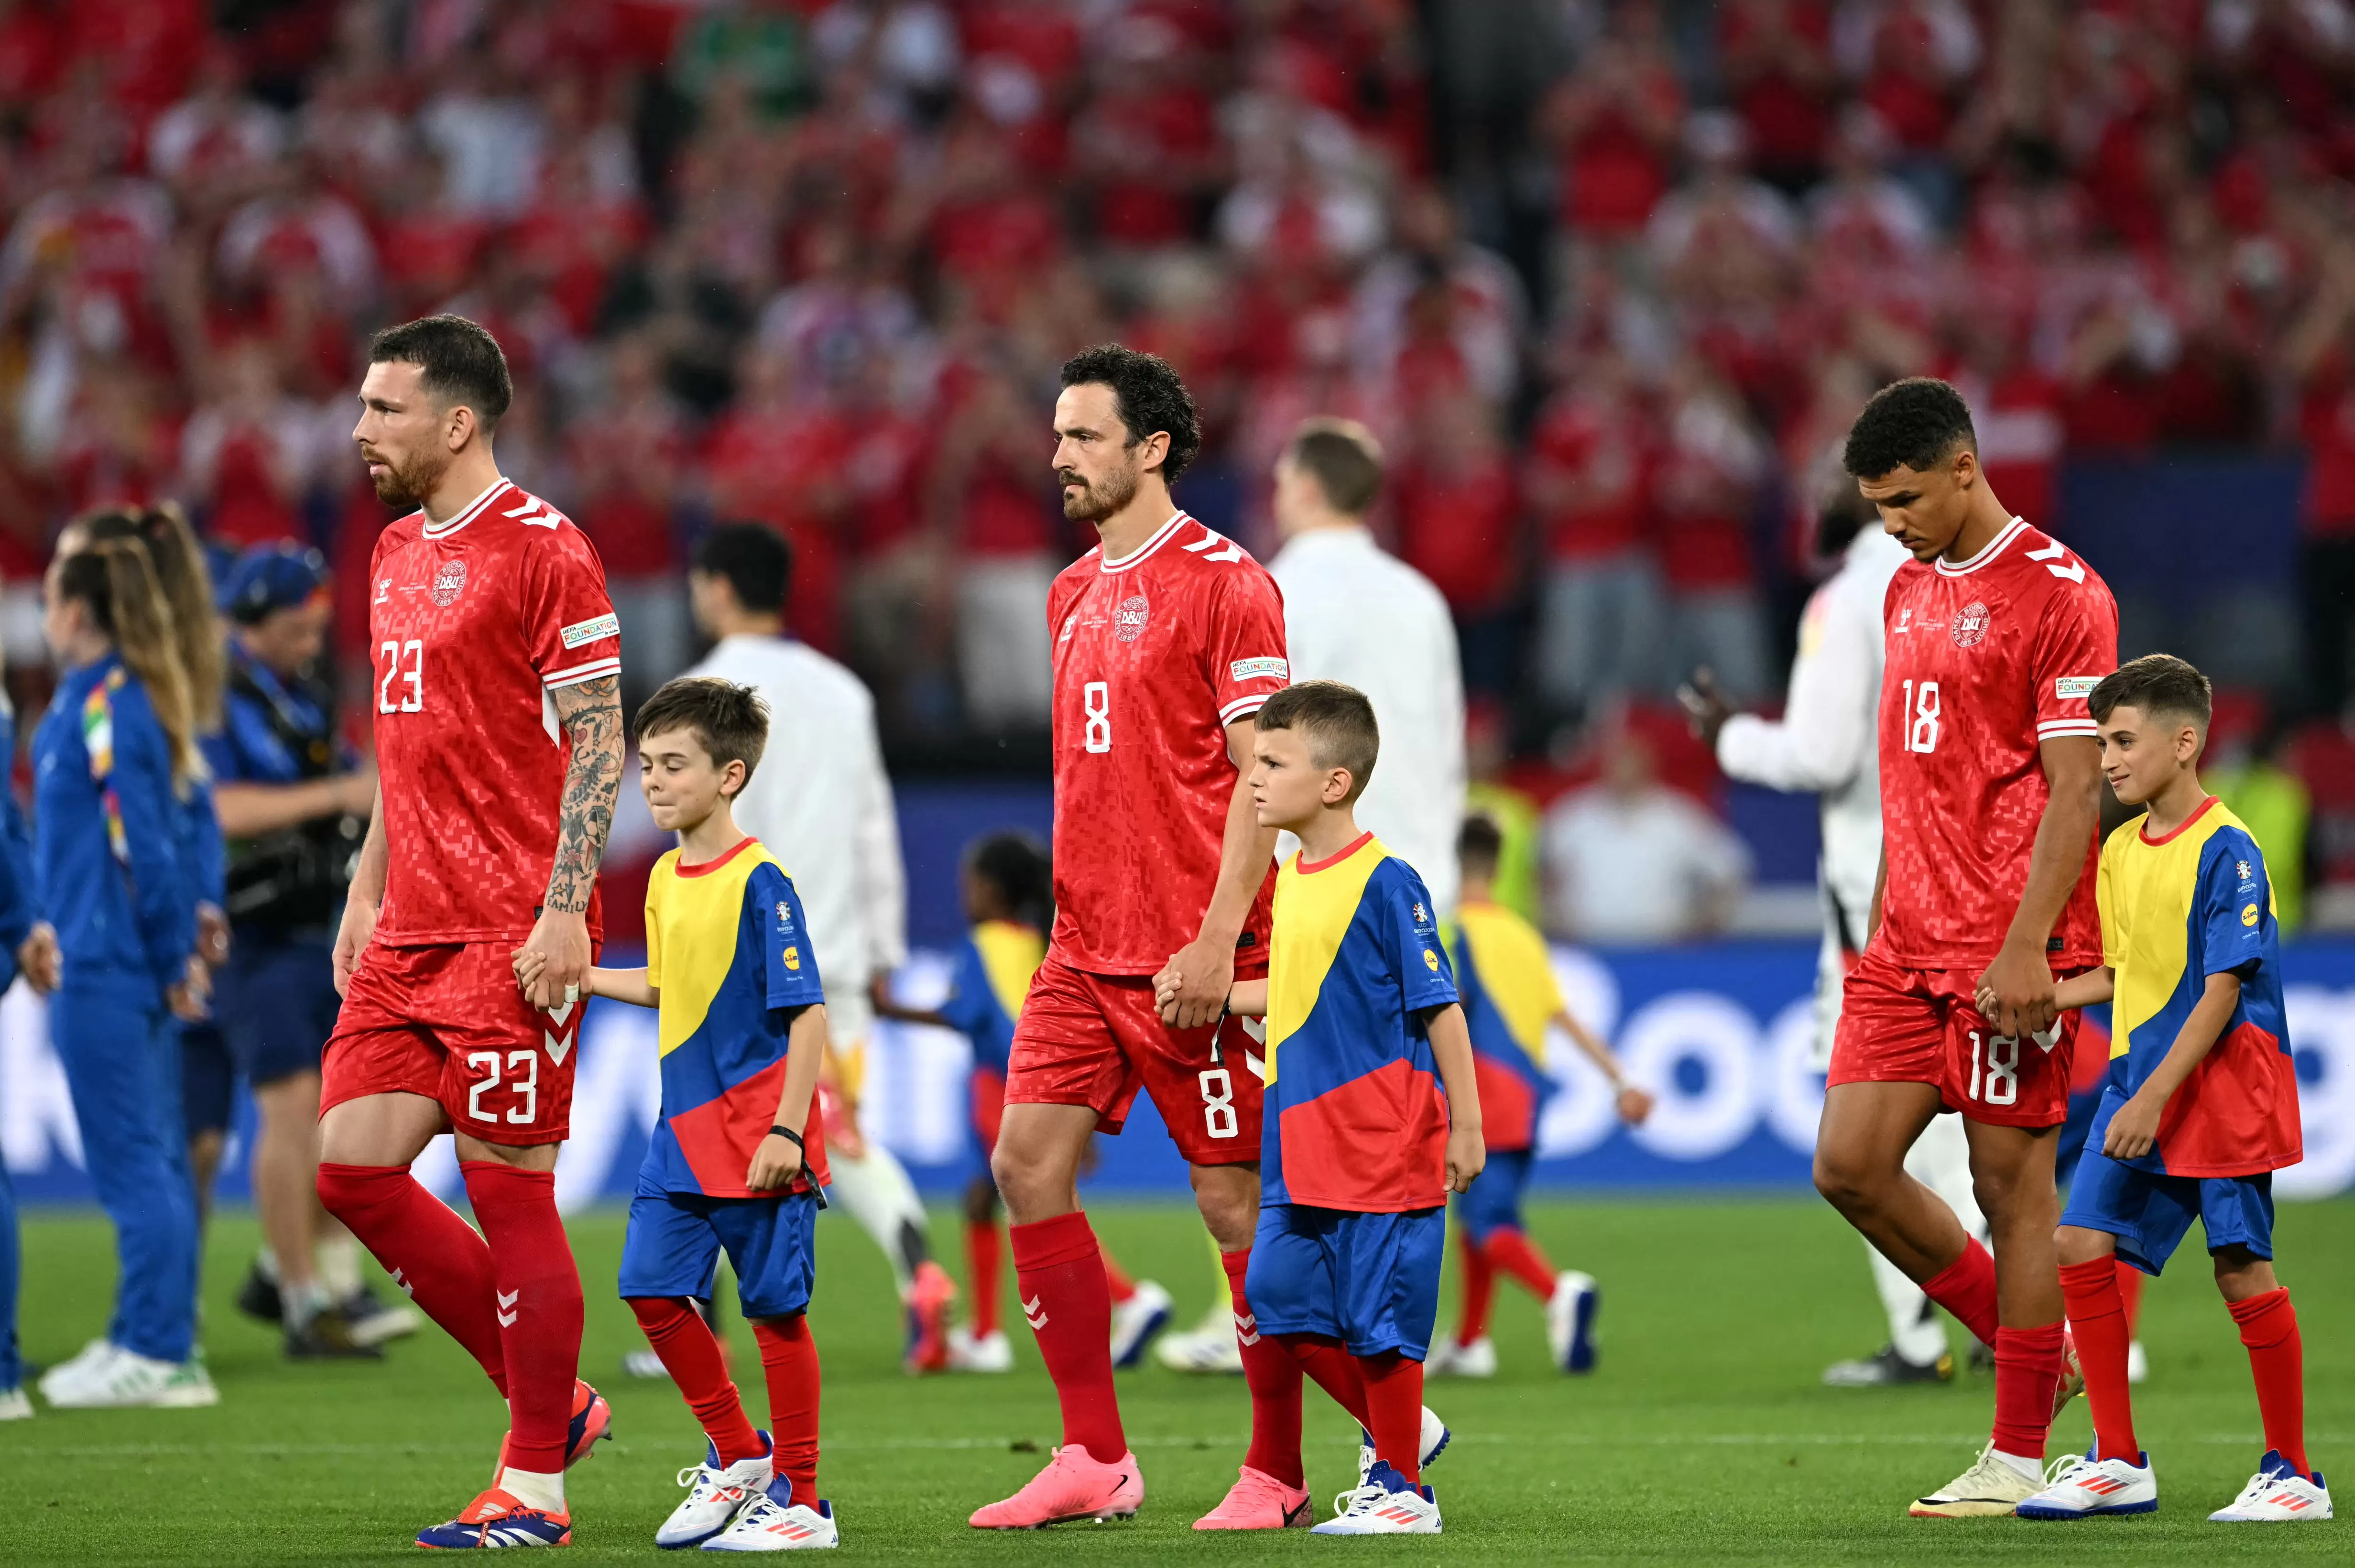 Los equipos salen al campo para enfrentarse en los octavos de final de la Eurocopa / Foto: AFP